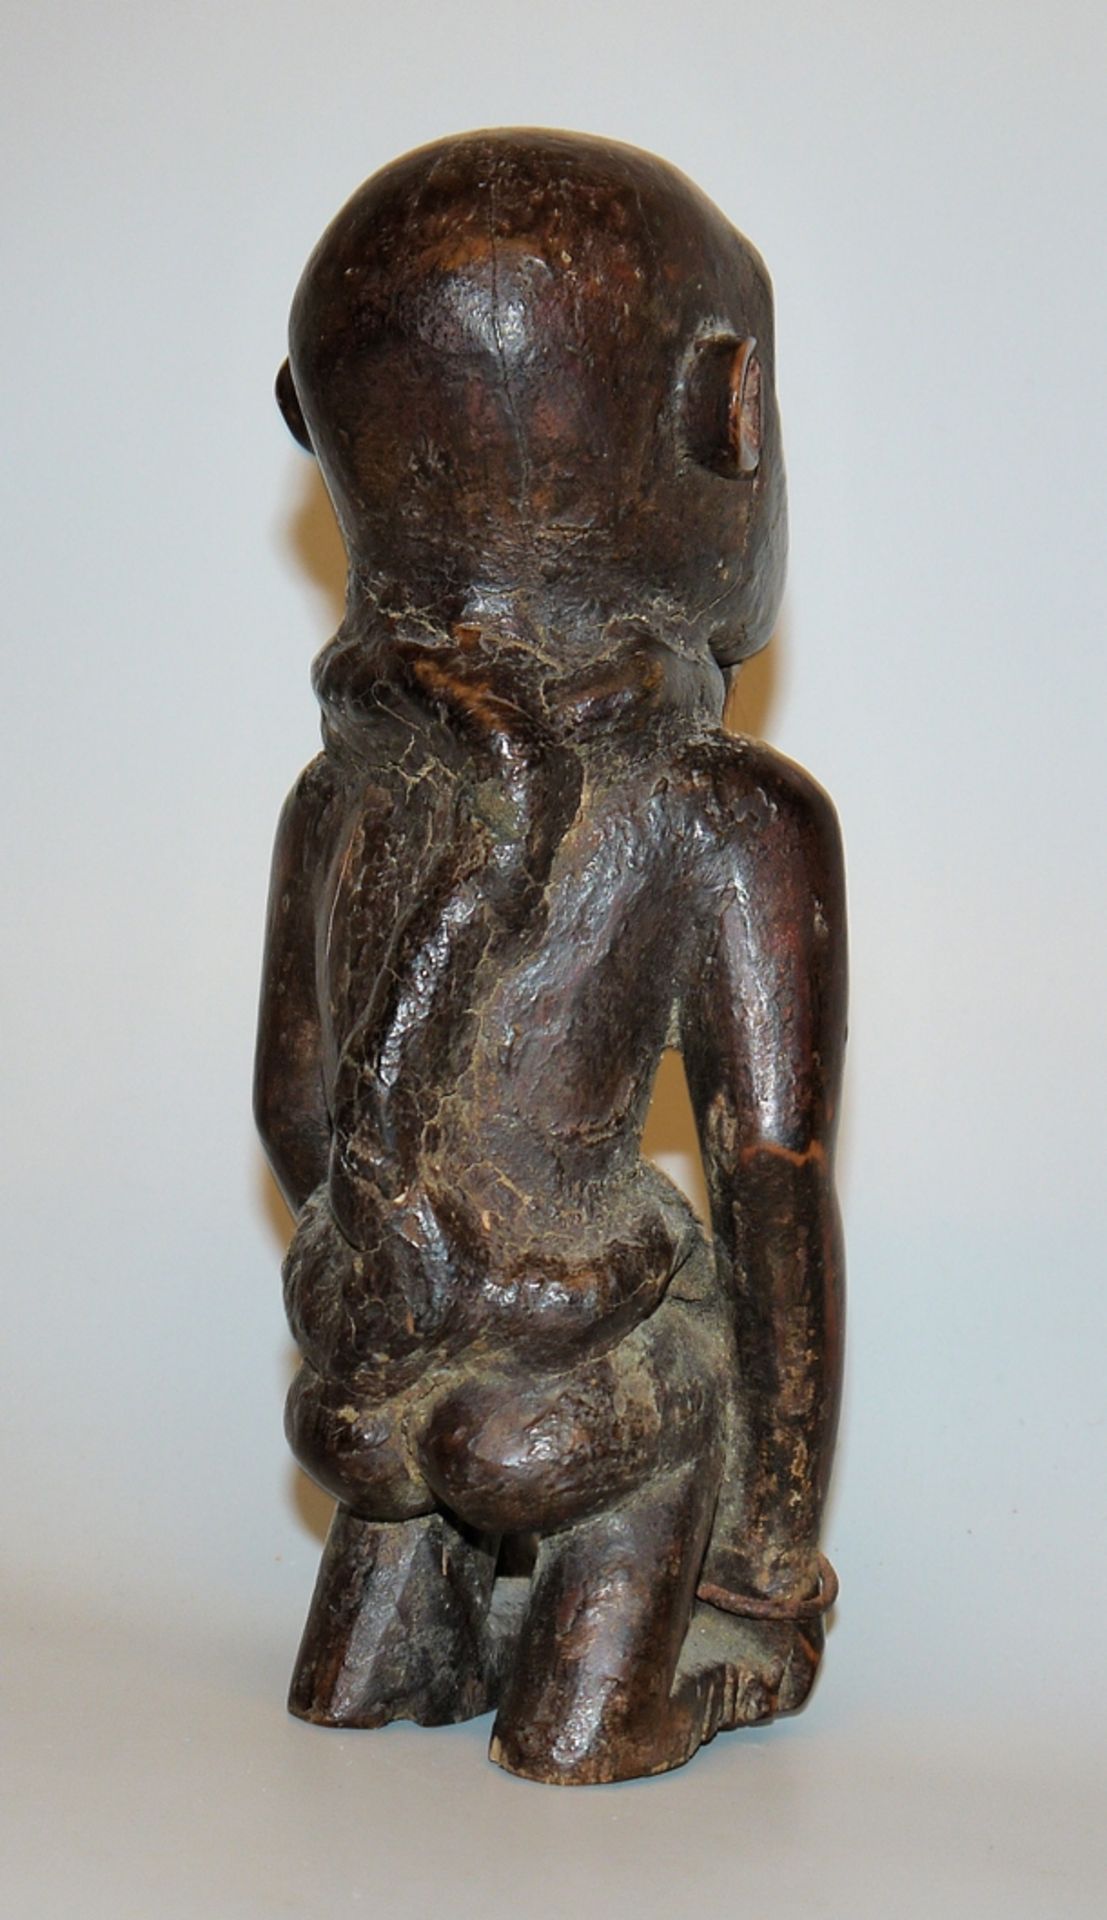 Monkey figure of the Vili, Congo - Image 2 of 2